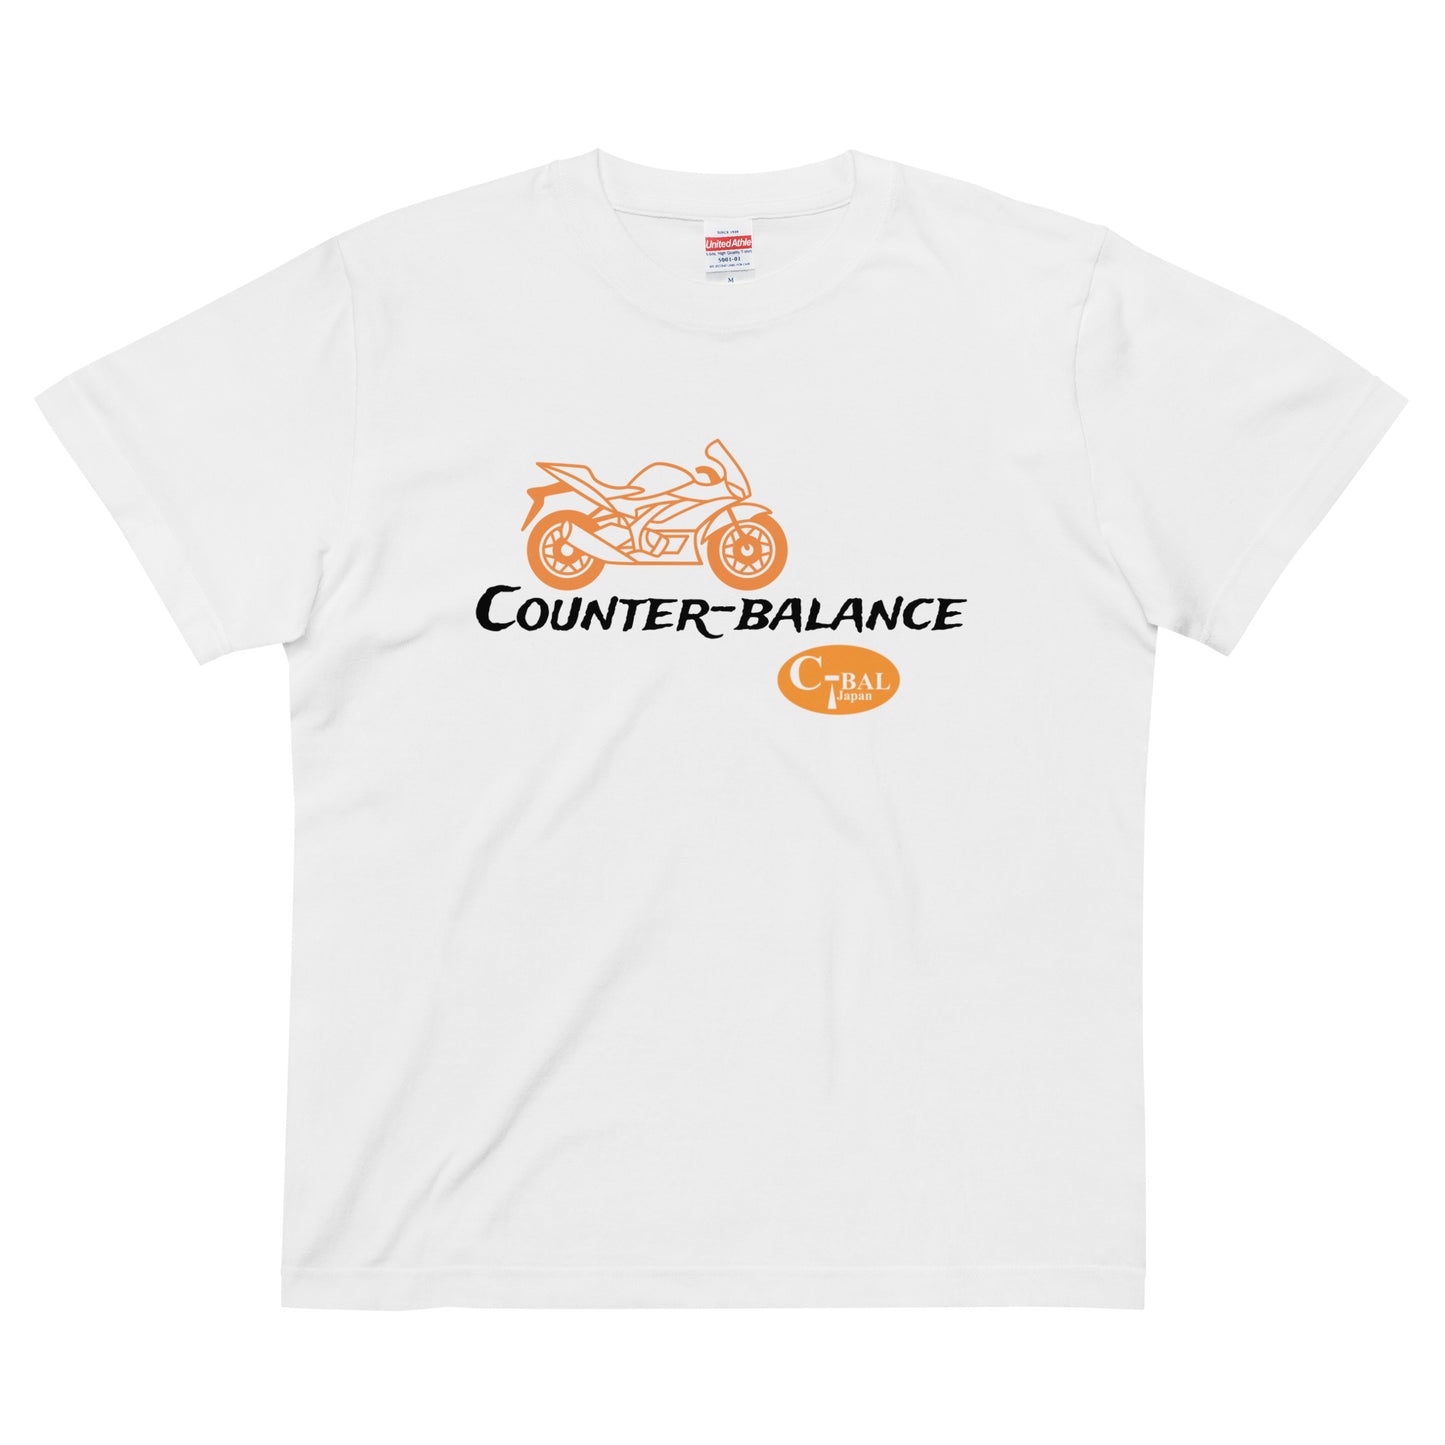 D004 - เสื้อยืดผ้าฝ้ายคุณภาพสูง (Super Sports MC: สีขาว/ส้ม)